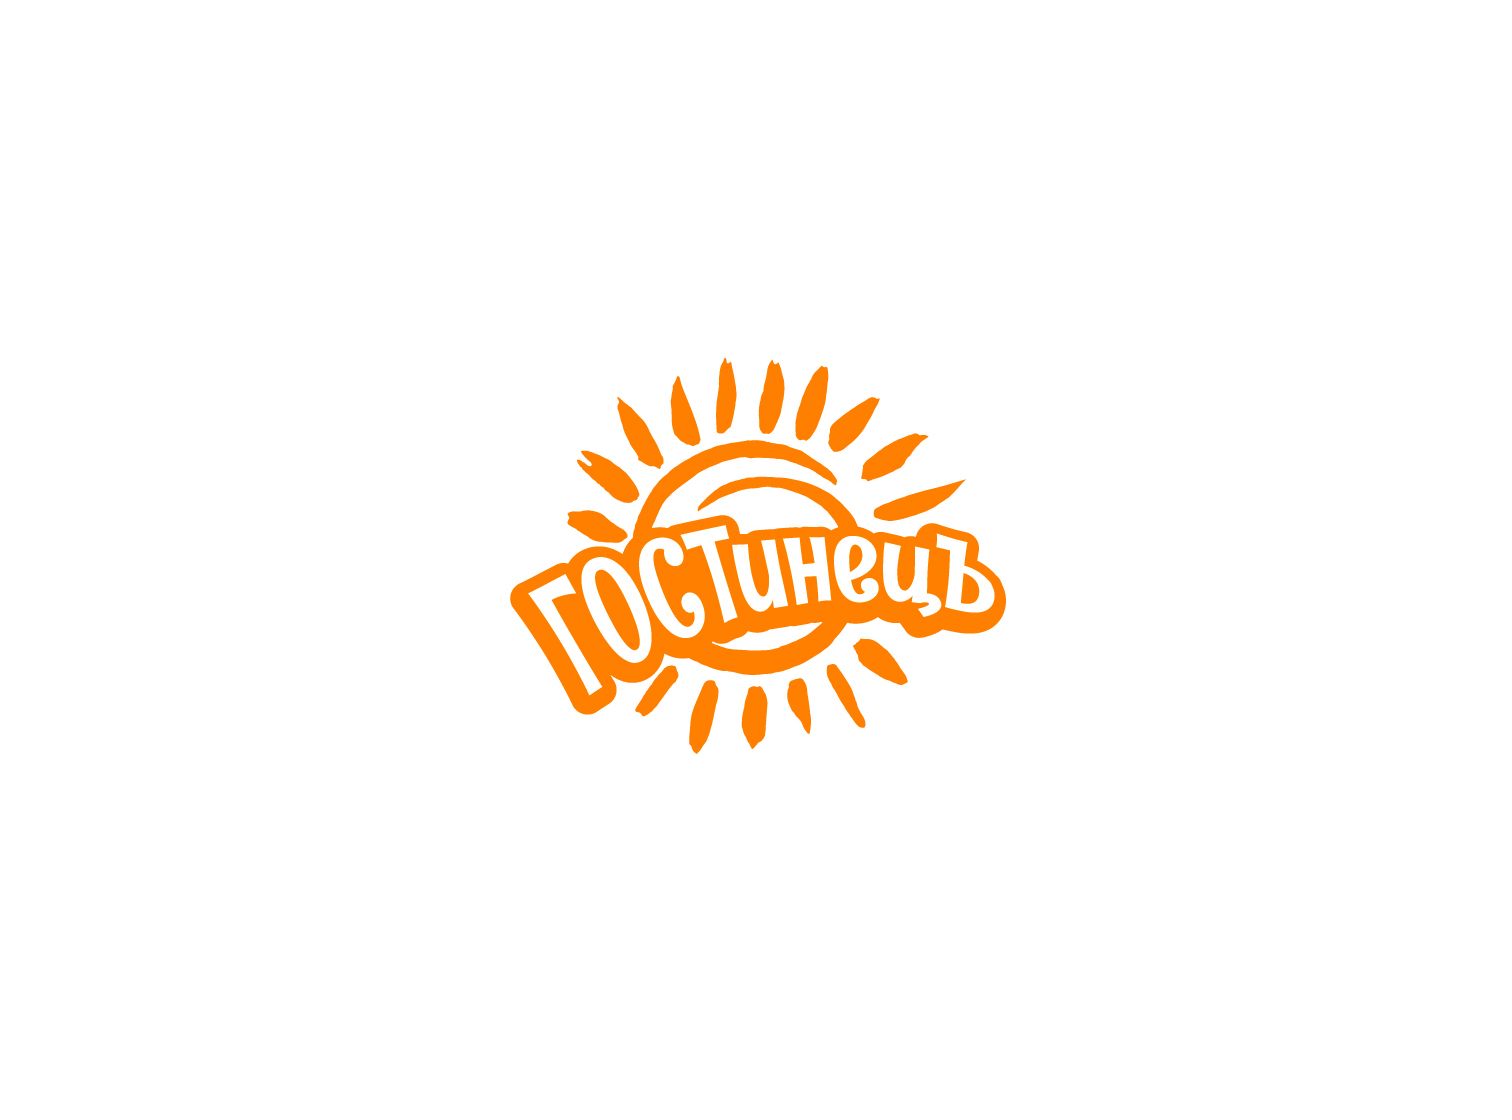 Логотип для ГОСТинецЪ - дизайнер jampa